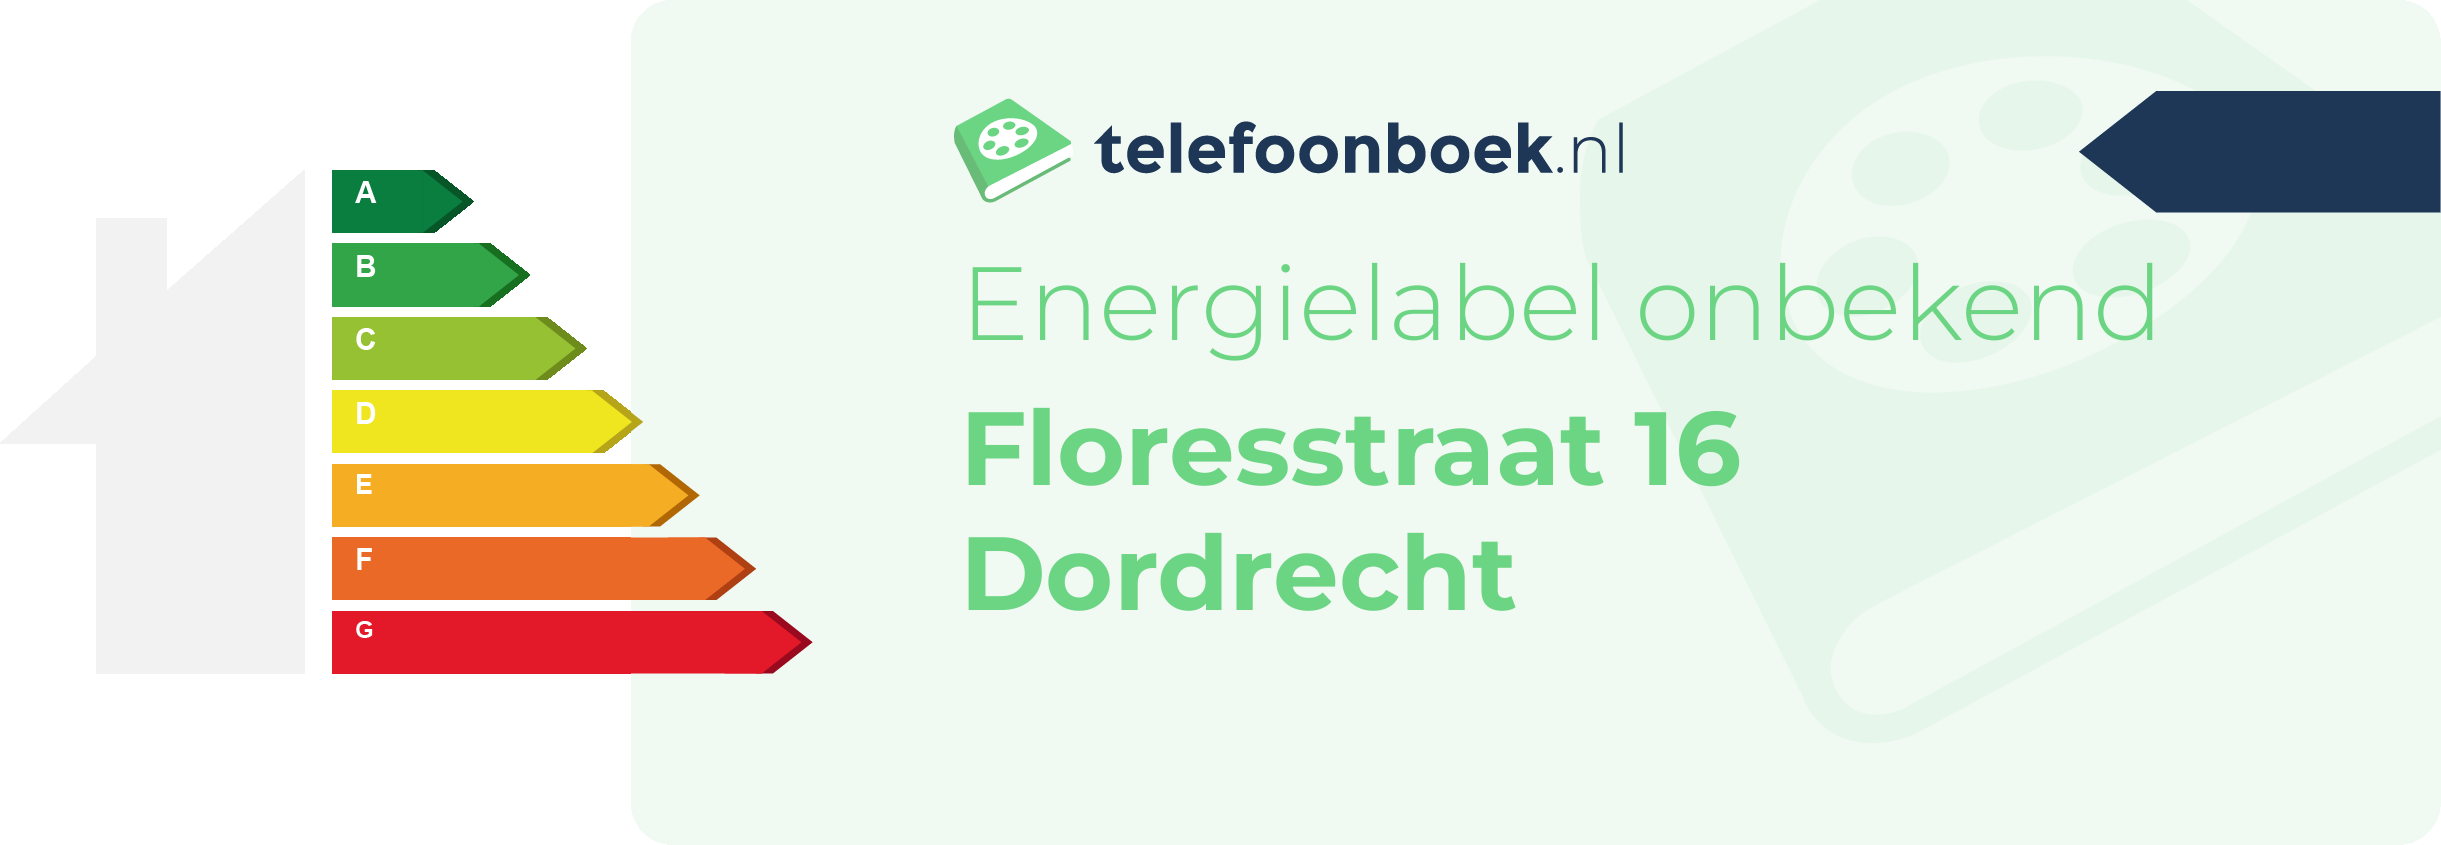 Energielabel Floresstraat 16 Dordrecht